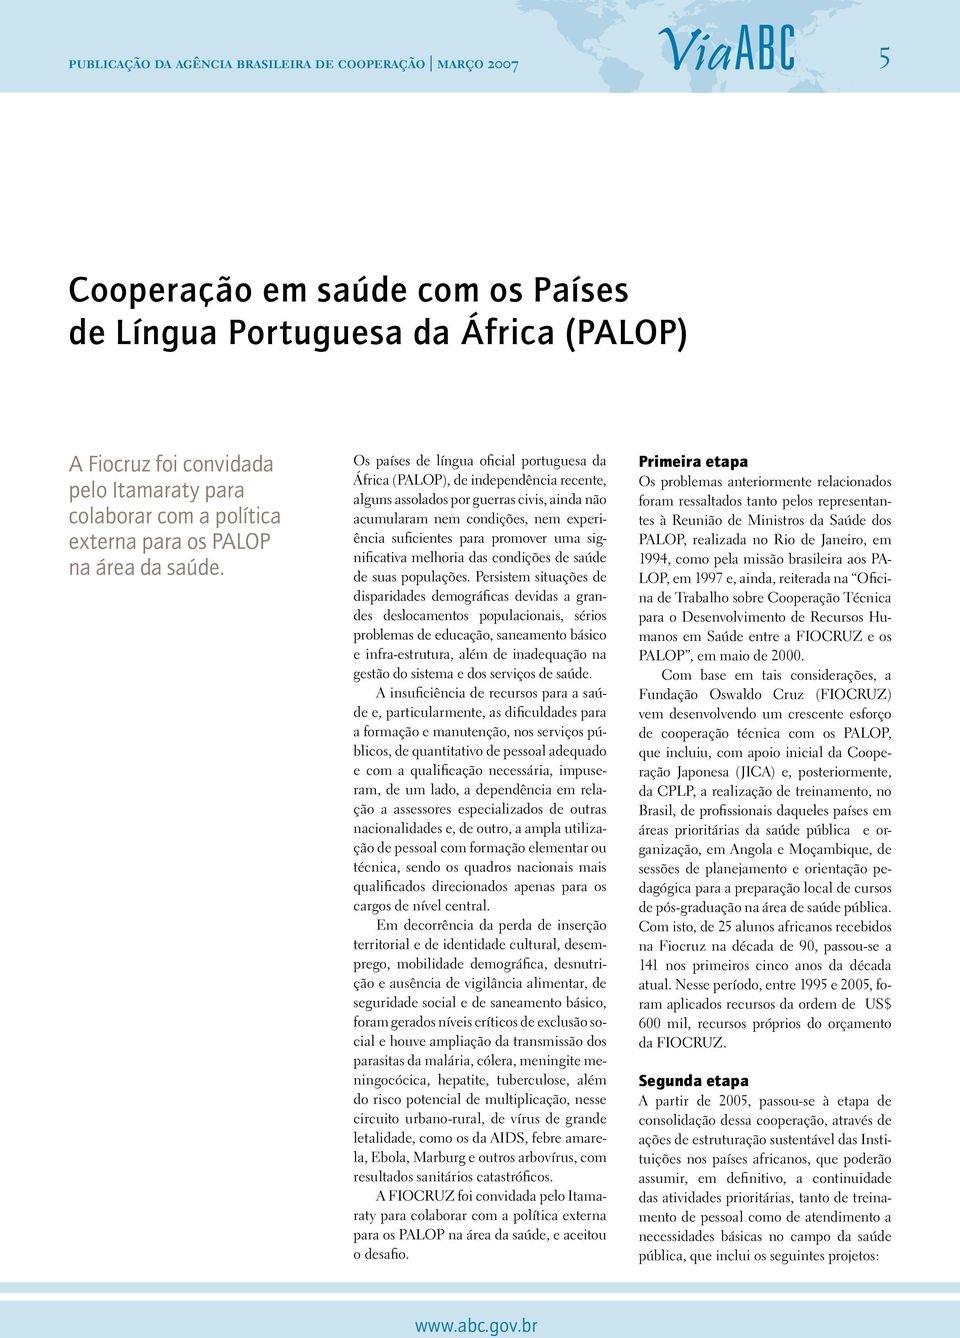 Os países de língua oficial portuguesa da África (PALOP), de independência recente, alguns assolados por guerras civis, ainda não acumularam nem condições, nem experiência suficientes para promover